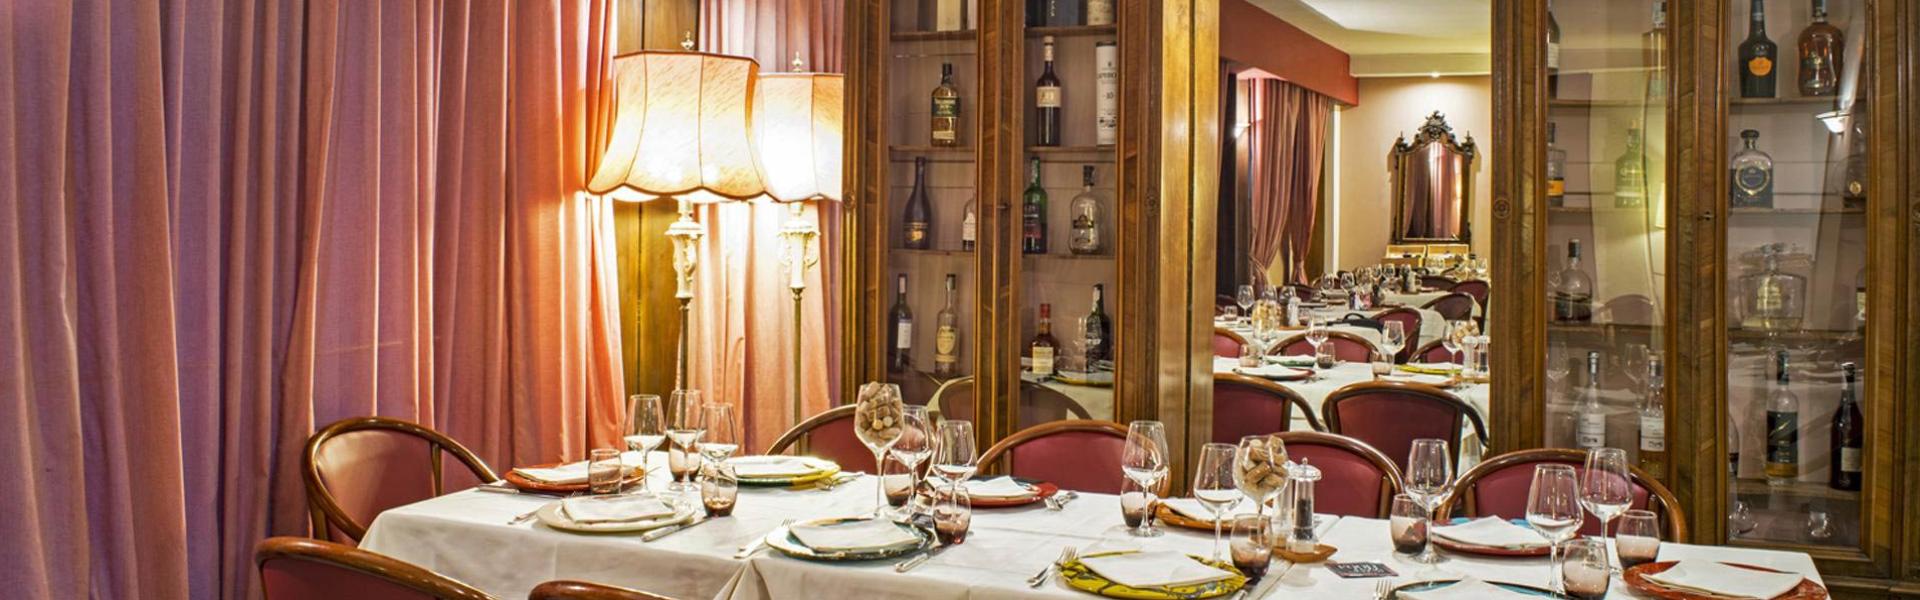 hotelgio it ristorante-enoteca-gio-arte-e-vini-perugia 010